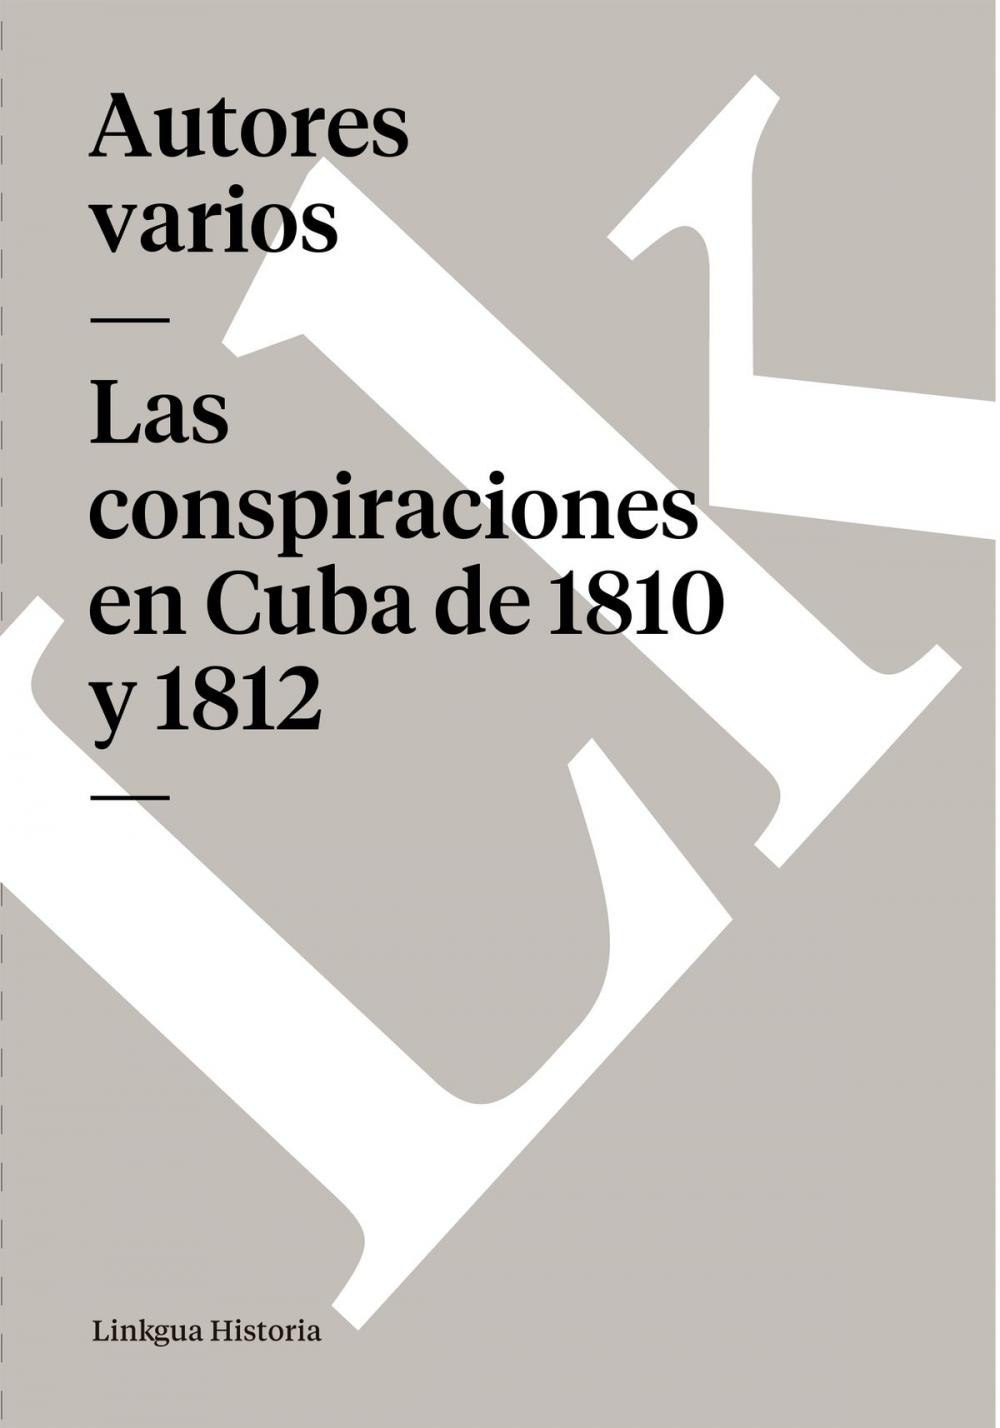 Big bigCover of conspiraciones en Cuba de 1810 y 1812